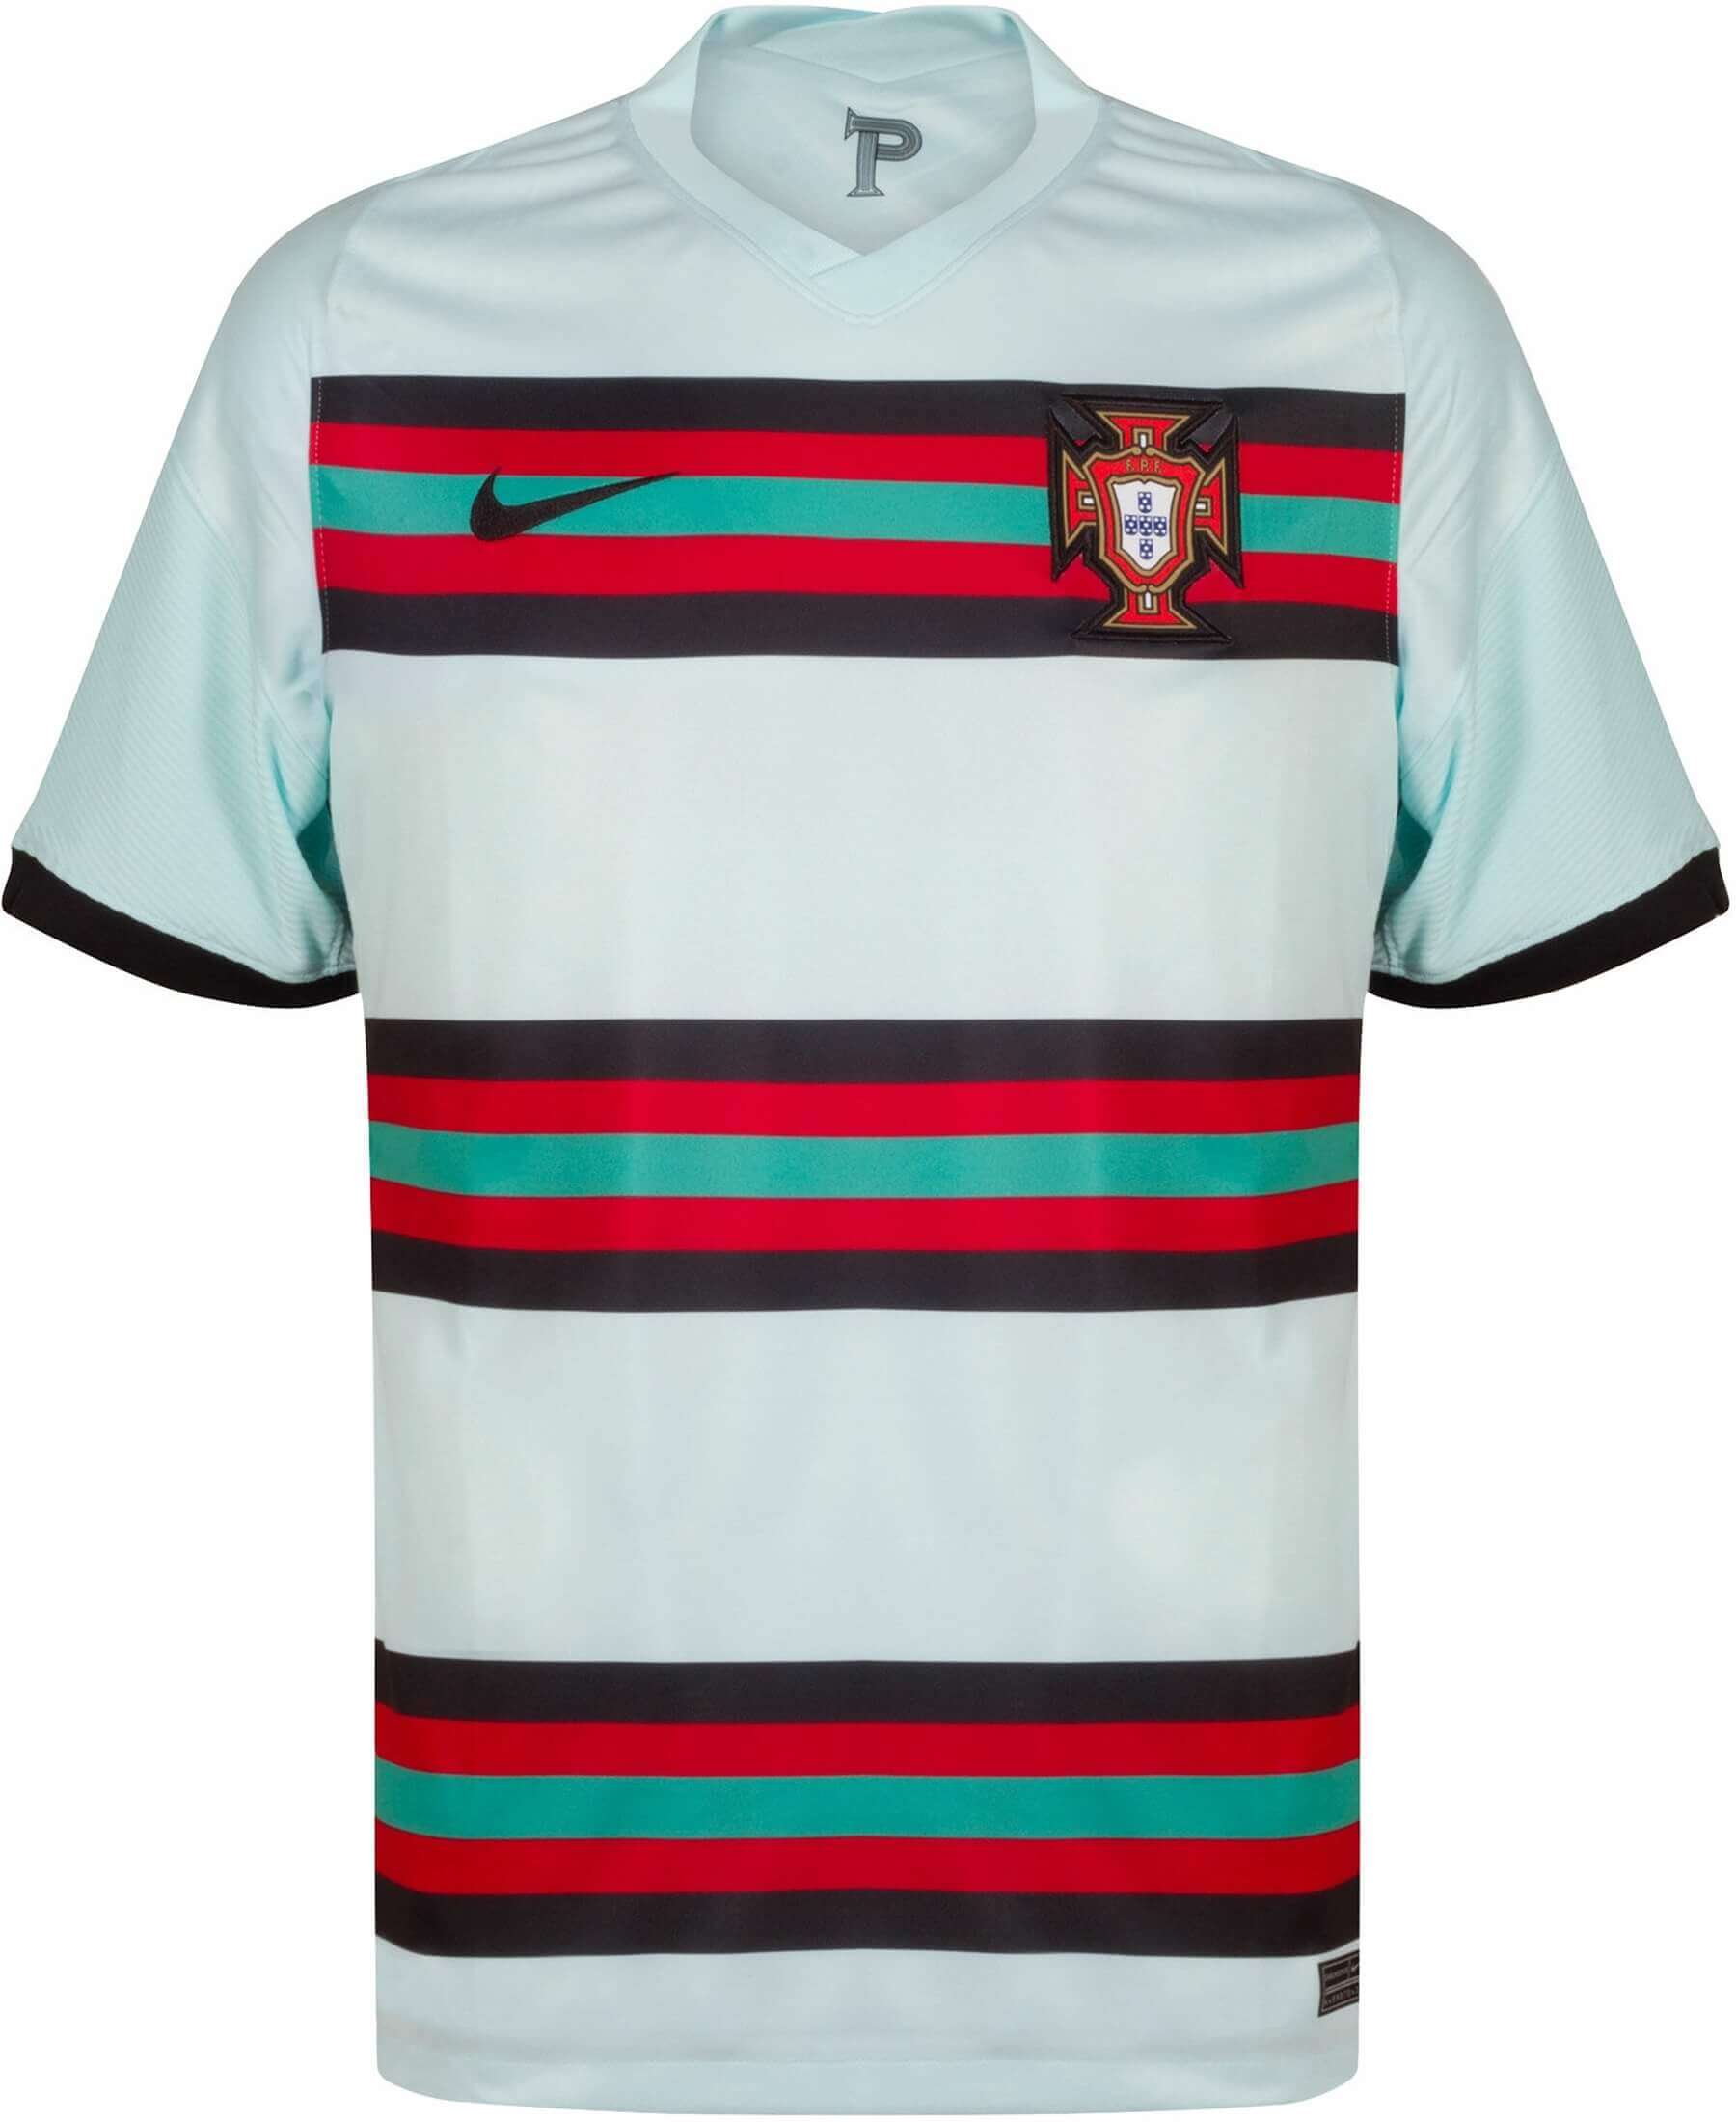 Entdecke das offizielle Nike Portugal FPF Stadium Auswärtstrikot für die EM 2020 bei SHOP4TEAMSPORT. Unterstütze Portugal mit diesem stilvollen Auswärtstrikot in edlem Grün und dem FPF Logo auf der Brust. Jetzt bestellen und zeige deine Unterstützung für die portugiesische Nationalmannschaft! Verfügbar im Onlineshop SHOP4TEAMSPORT. Sichere dir dein Portugal Auswärtstrikot für die Europameisterschaft 2020!